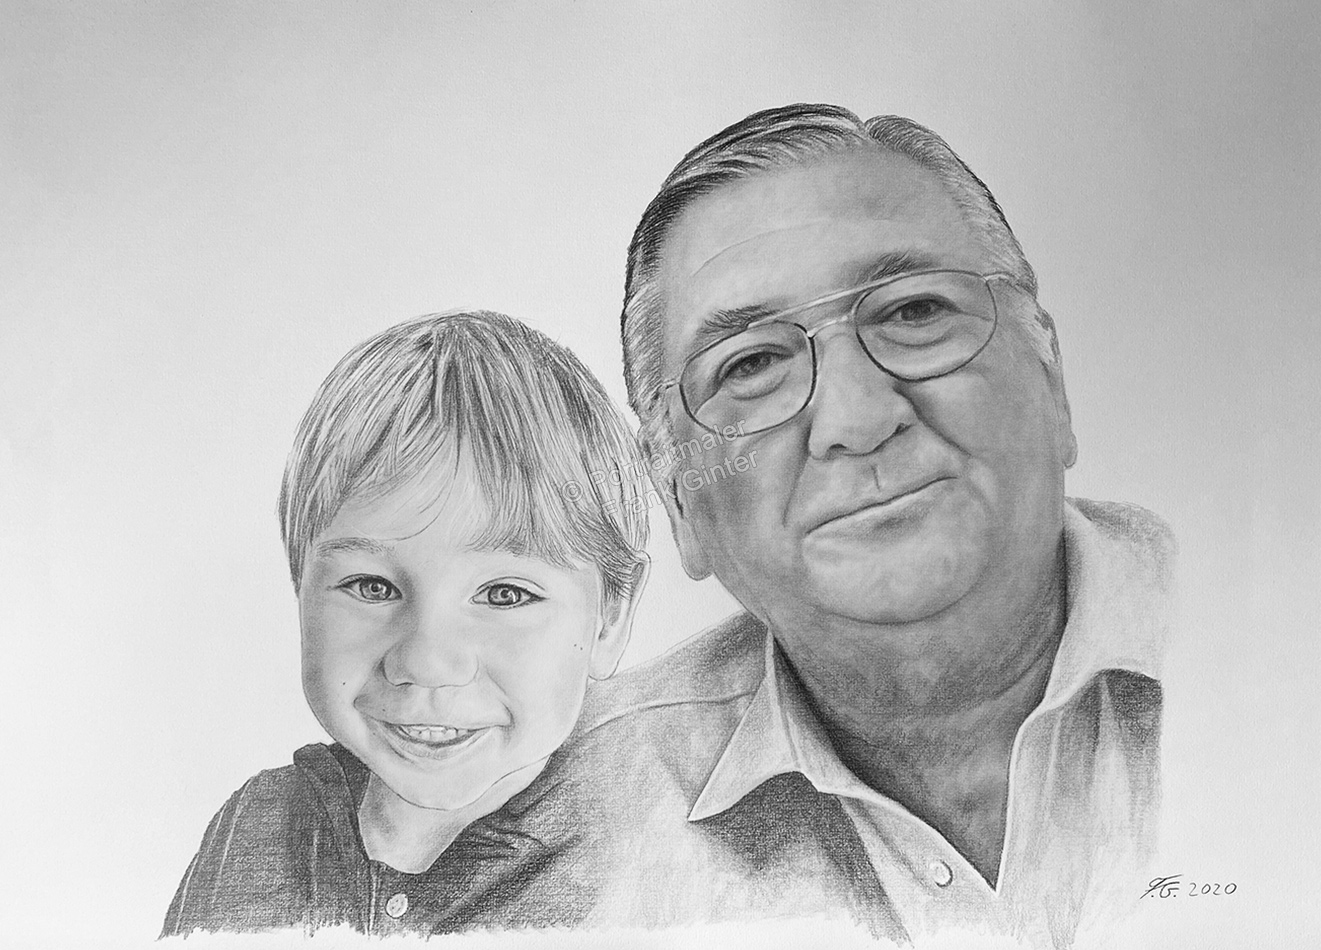 Familienporträts, Kohlezeichnung von Opa und Enkel zeichnen lassen